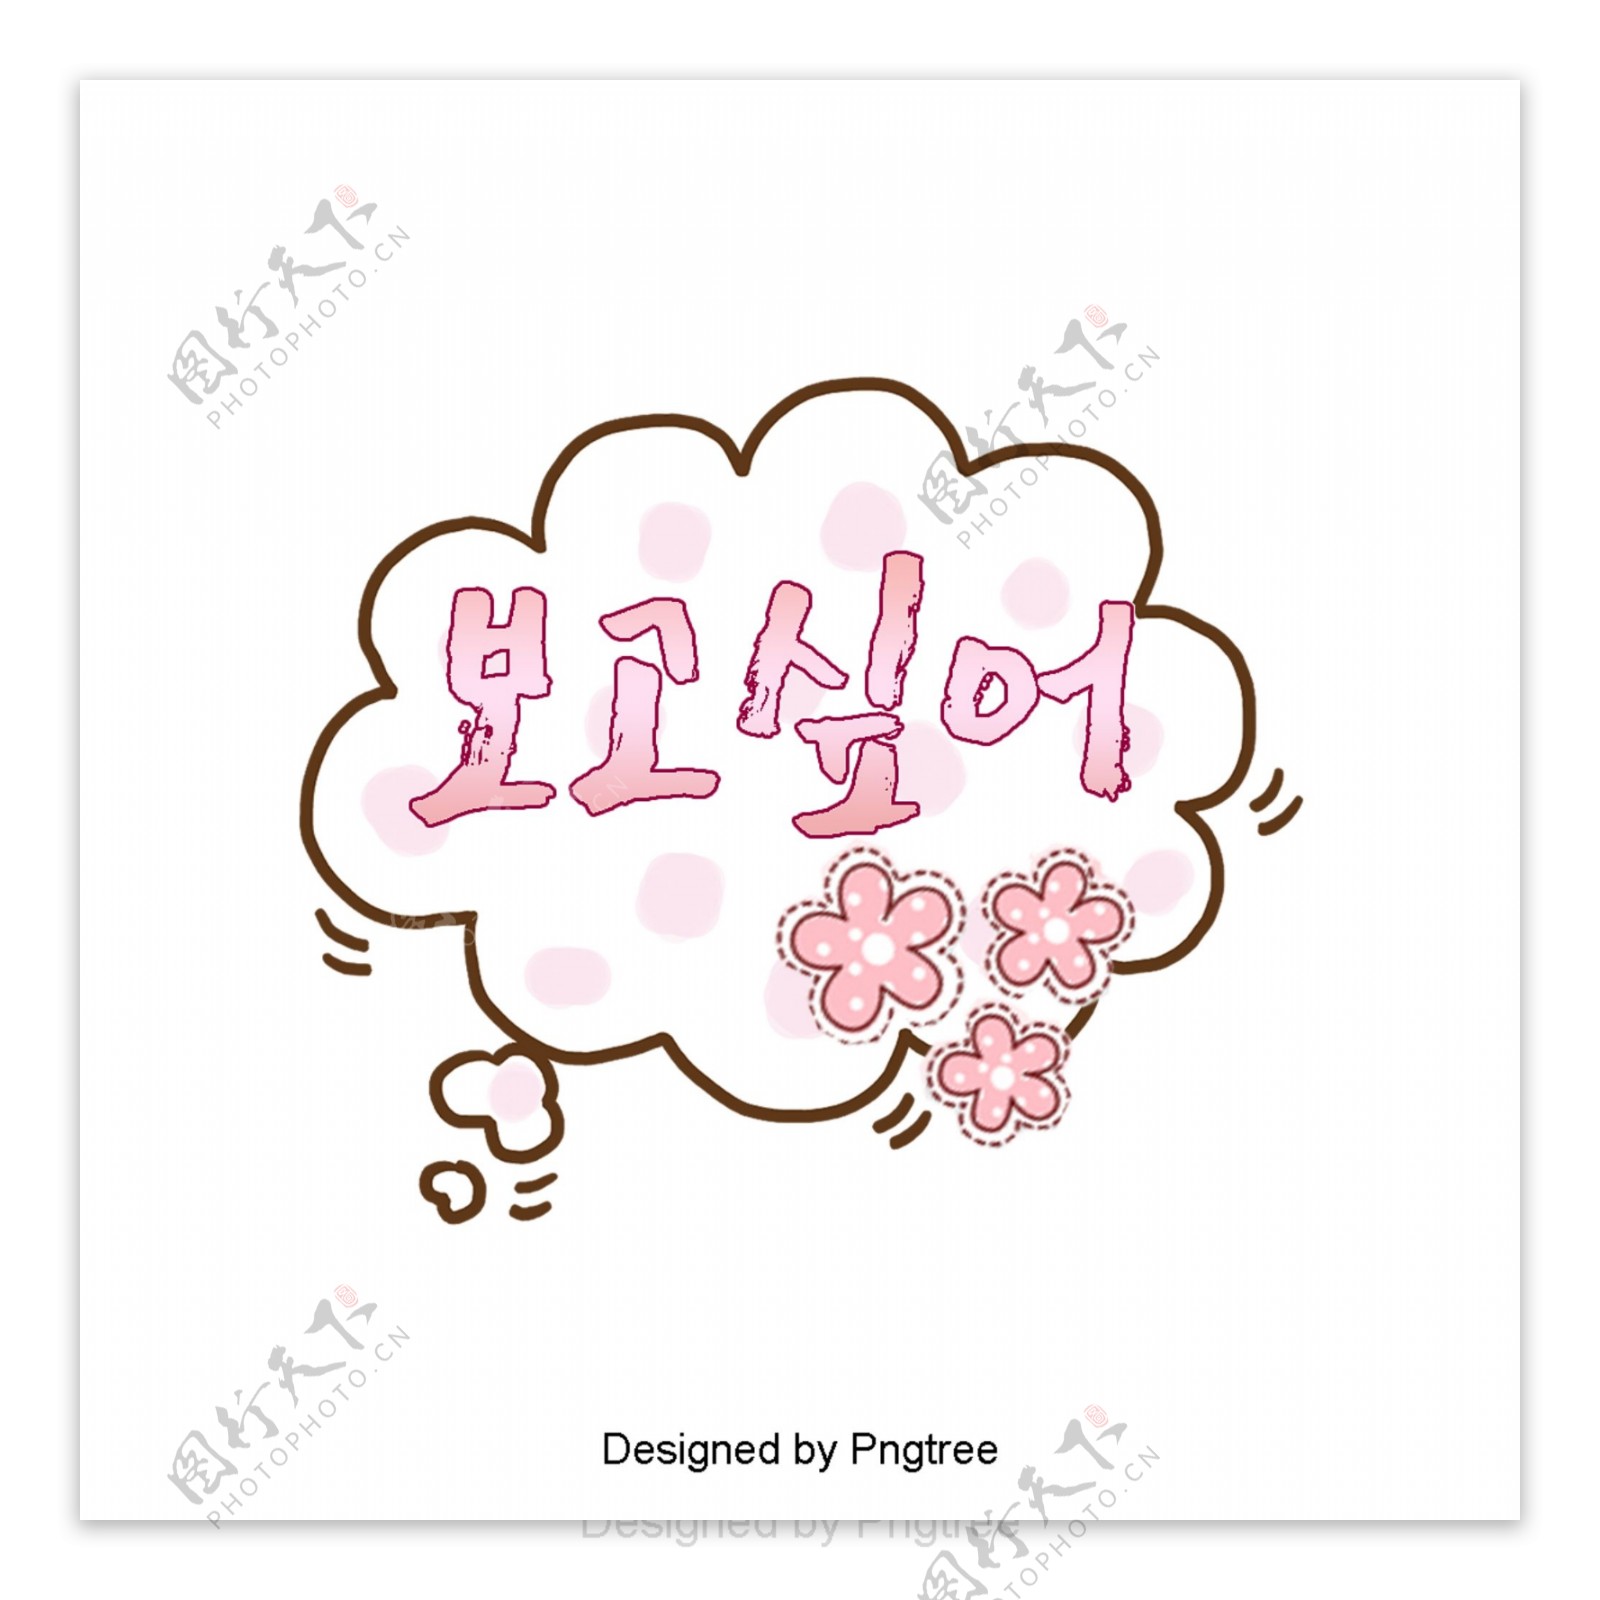 我想要一个可爱的粉红色猫爪子耳语泡泡字体设计